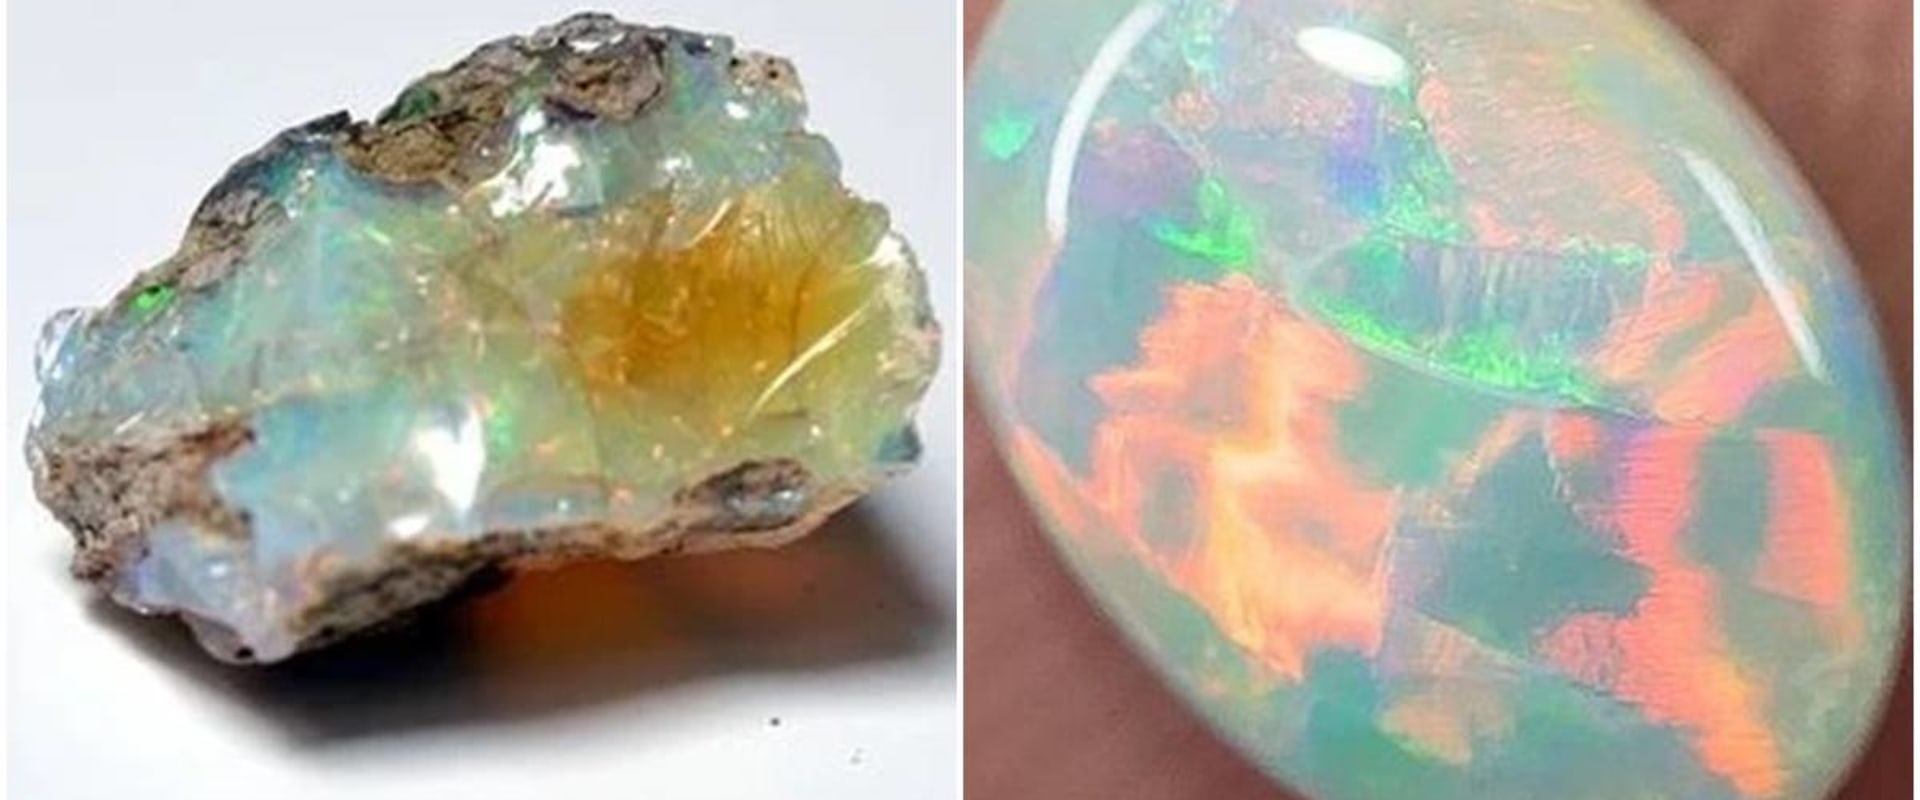 Who can not wear opal?